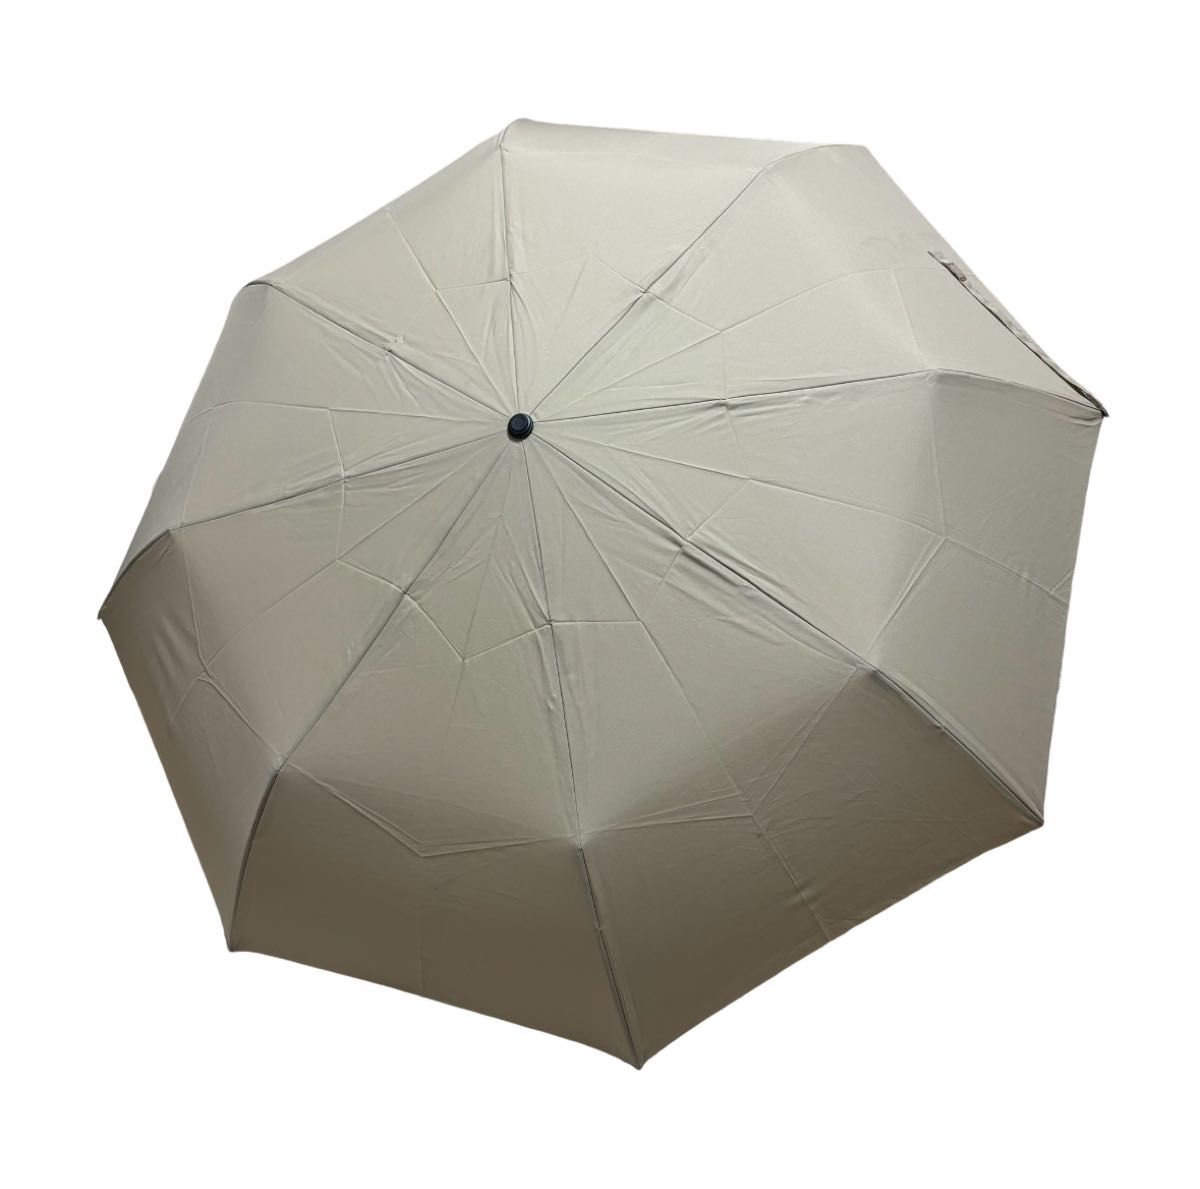 ユニクロ UNIQLO UVカットコンパクトアンブレラ 親骨55cm 折り畳み傘 折りたたみ傘 晴雨兼用 傘 レディース メンズ